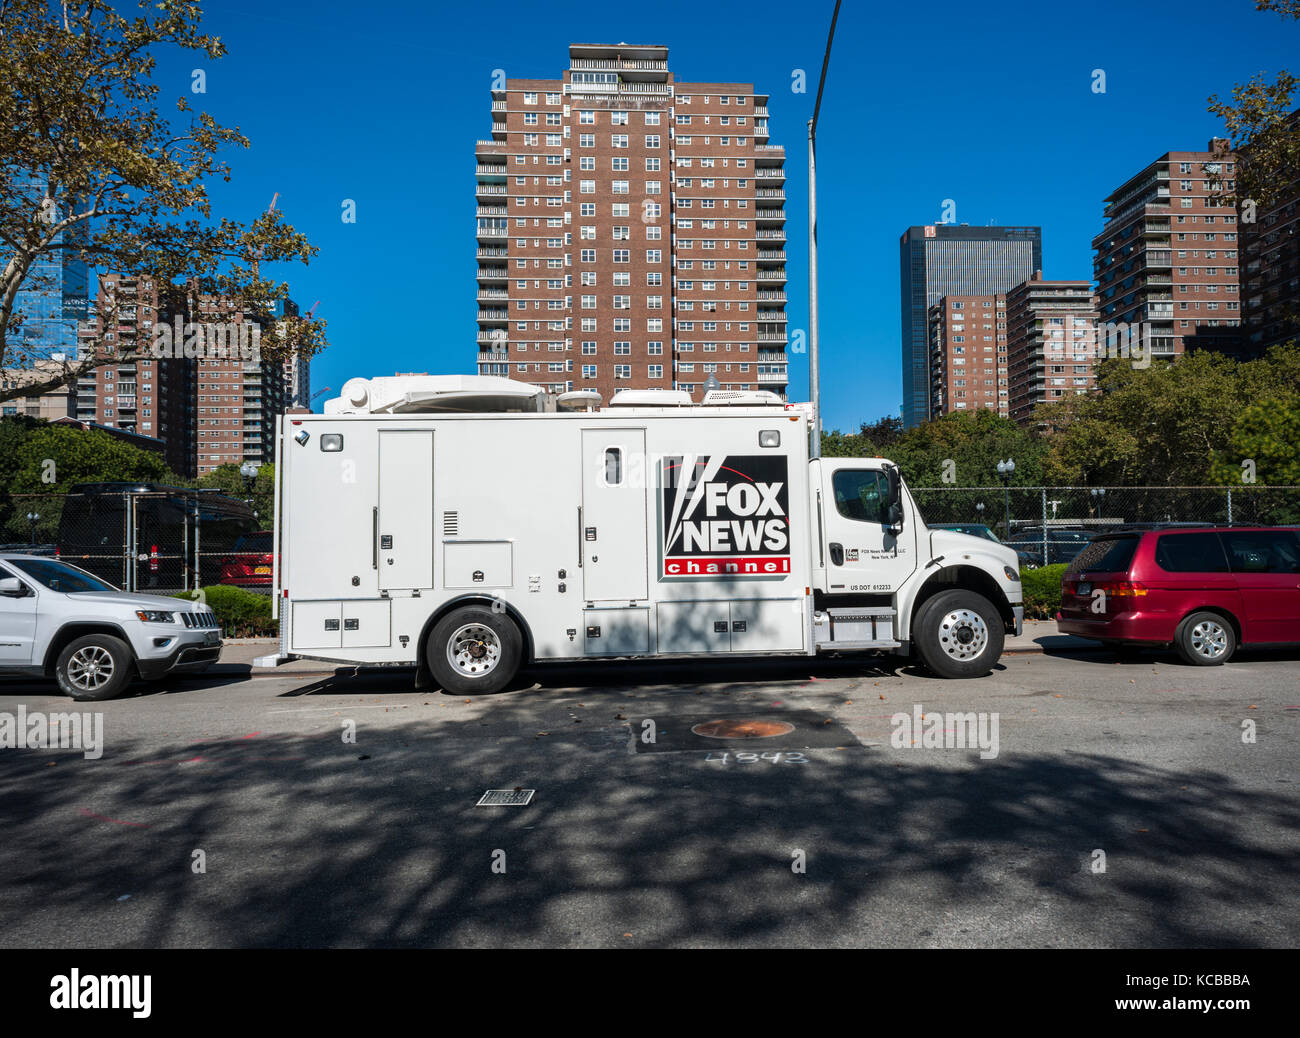 Un fox news de la radiodiffusion mobile chariot stationné à new york le Jeudi, Septembre 28, 2017. (© richard b. levine) Banque D'Images